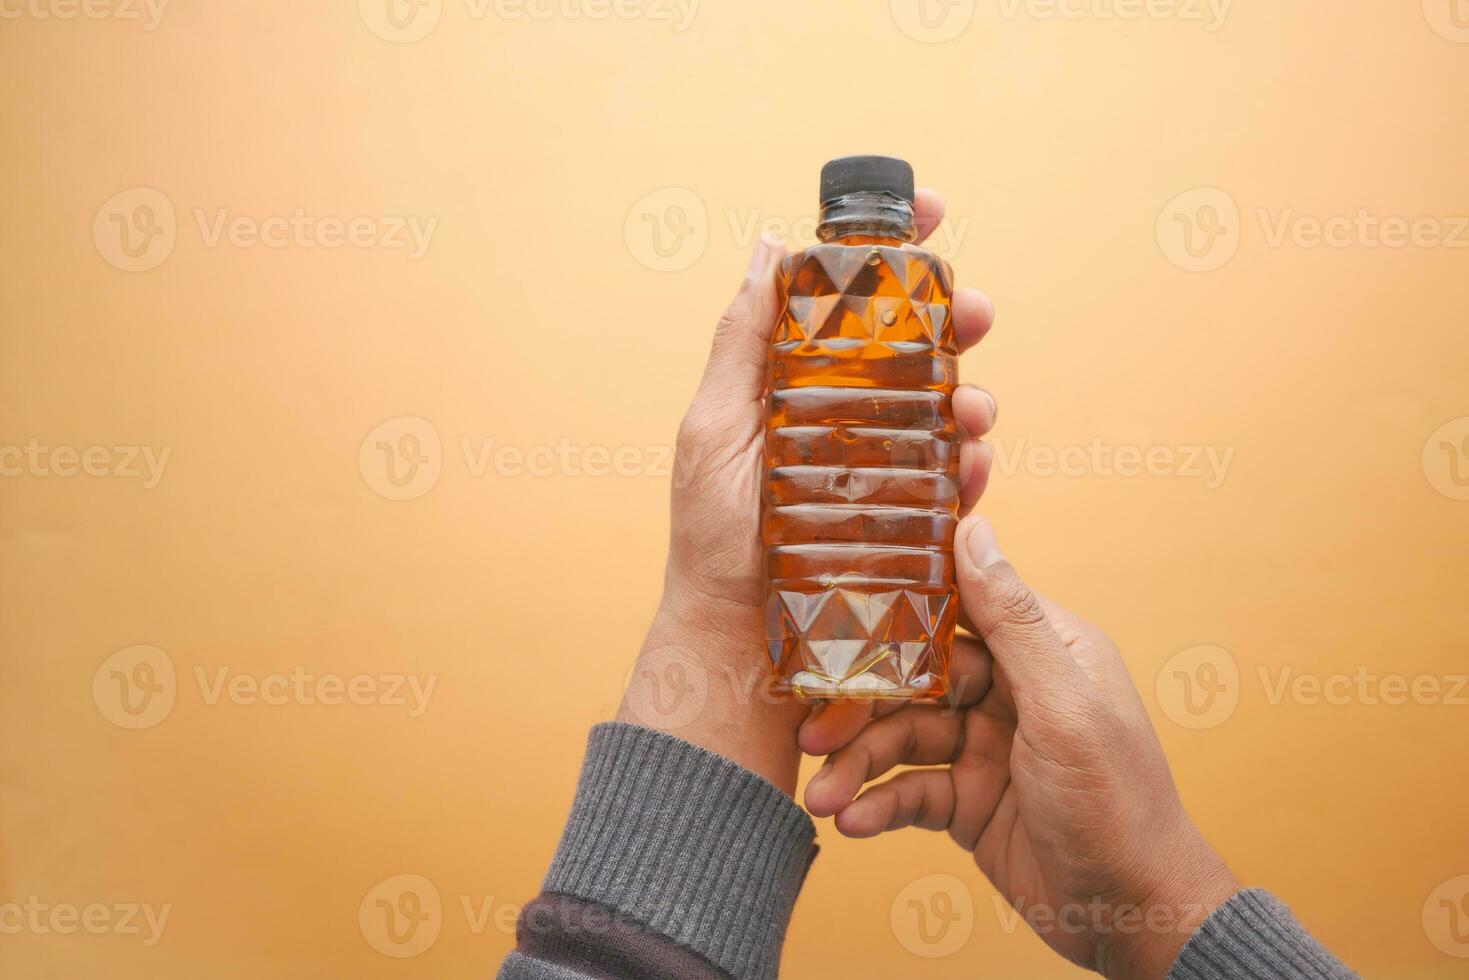 men holding a bottle of oil bottle photo